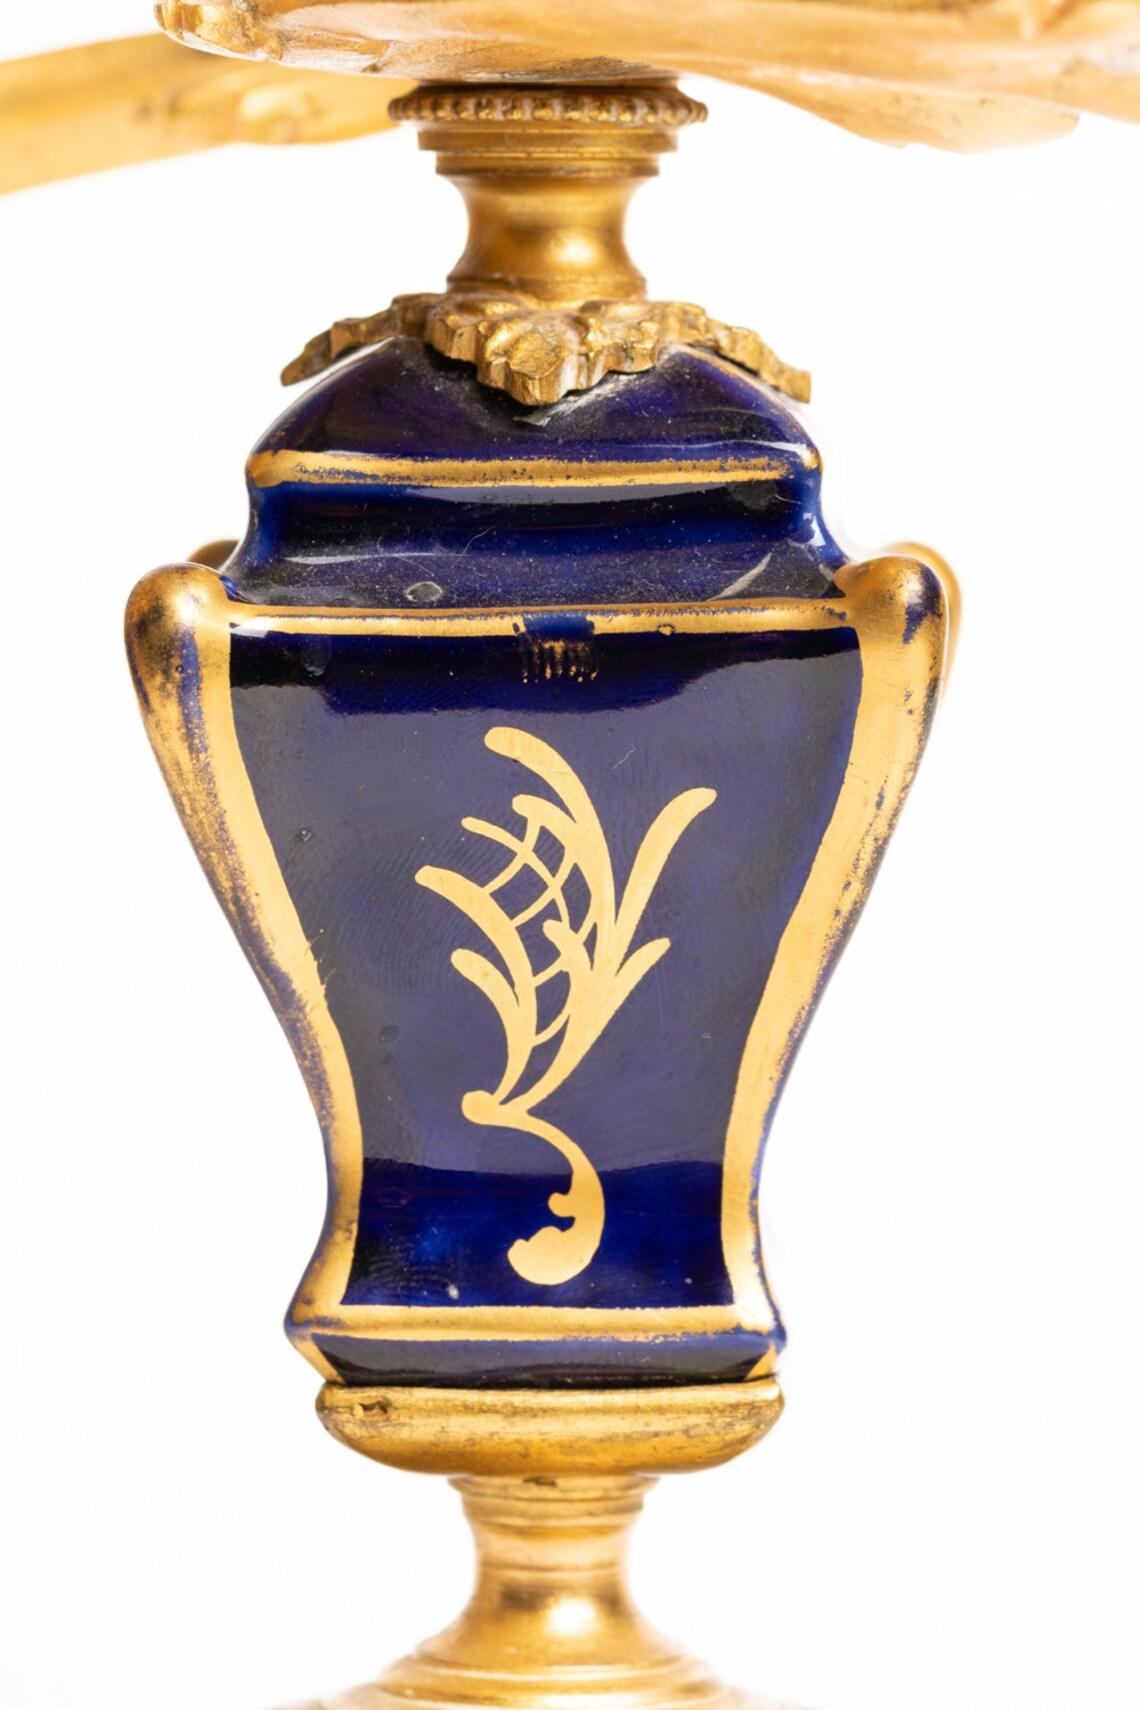 Très beau candélabre français à deux cônes en bronze doré et porcelaine, vers le 19e siècle. 

Le chandelier est décoré de porcelaine bleu cobalt avec une marque dorée sur trois côtés et un petit Chérubin délicatement peint à la main dans les nuages